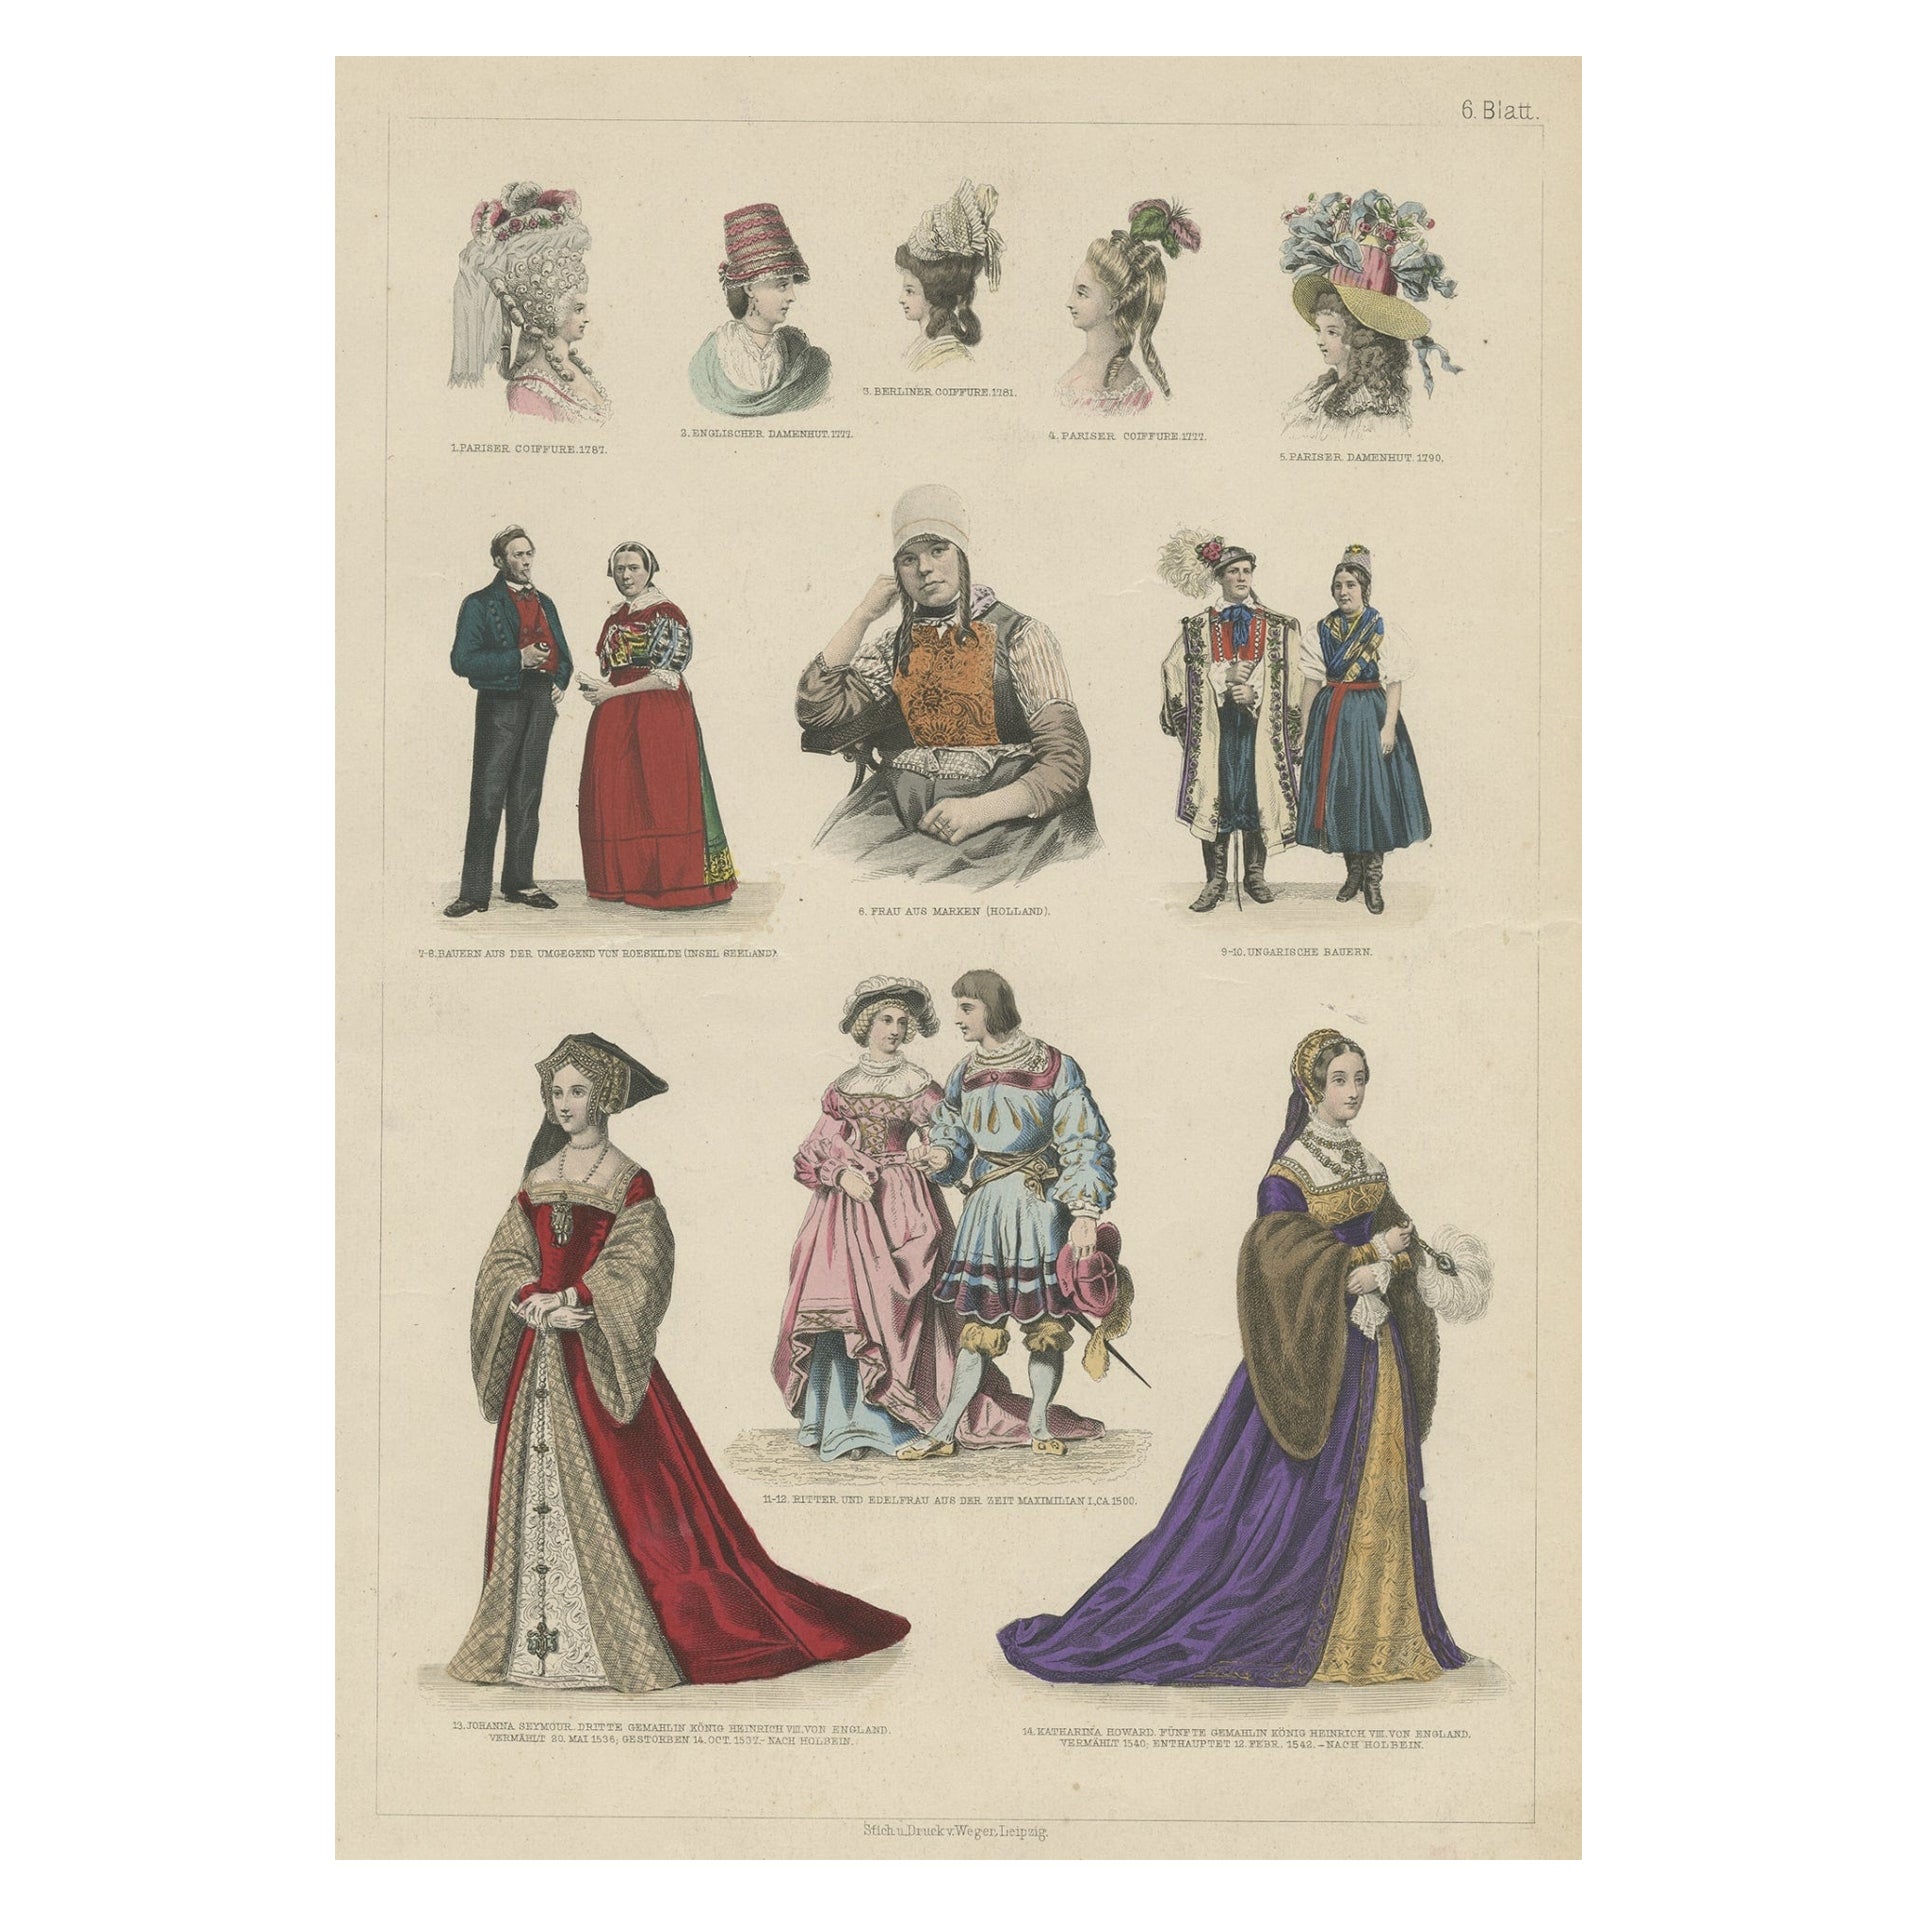 Dekorativer Druck von Kostümen aus Ungarn, England, Deutschland, Holland und Holland, um 1875